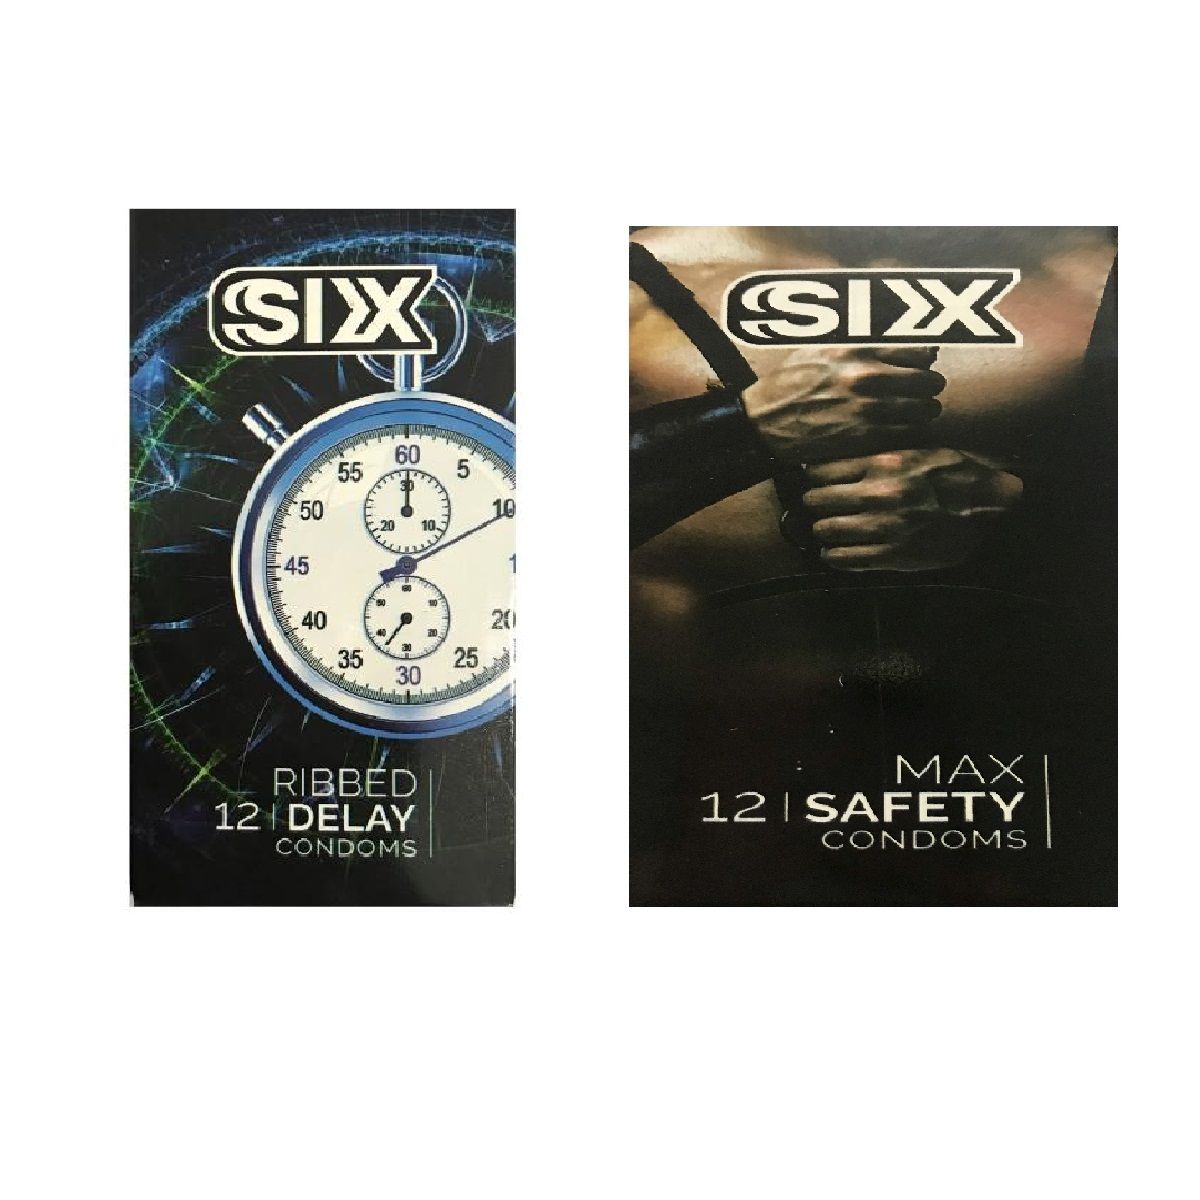 کاندوم سیکس مدل Ribbed Delay بسته 12 عددی به همراه کاندوم سیکس مدل Max Safety بسته 12 عددی -  - 2